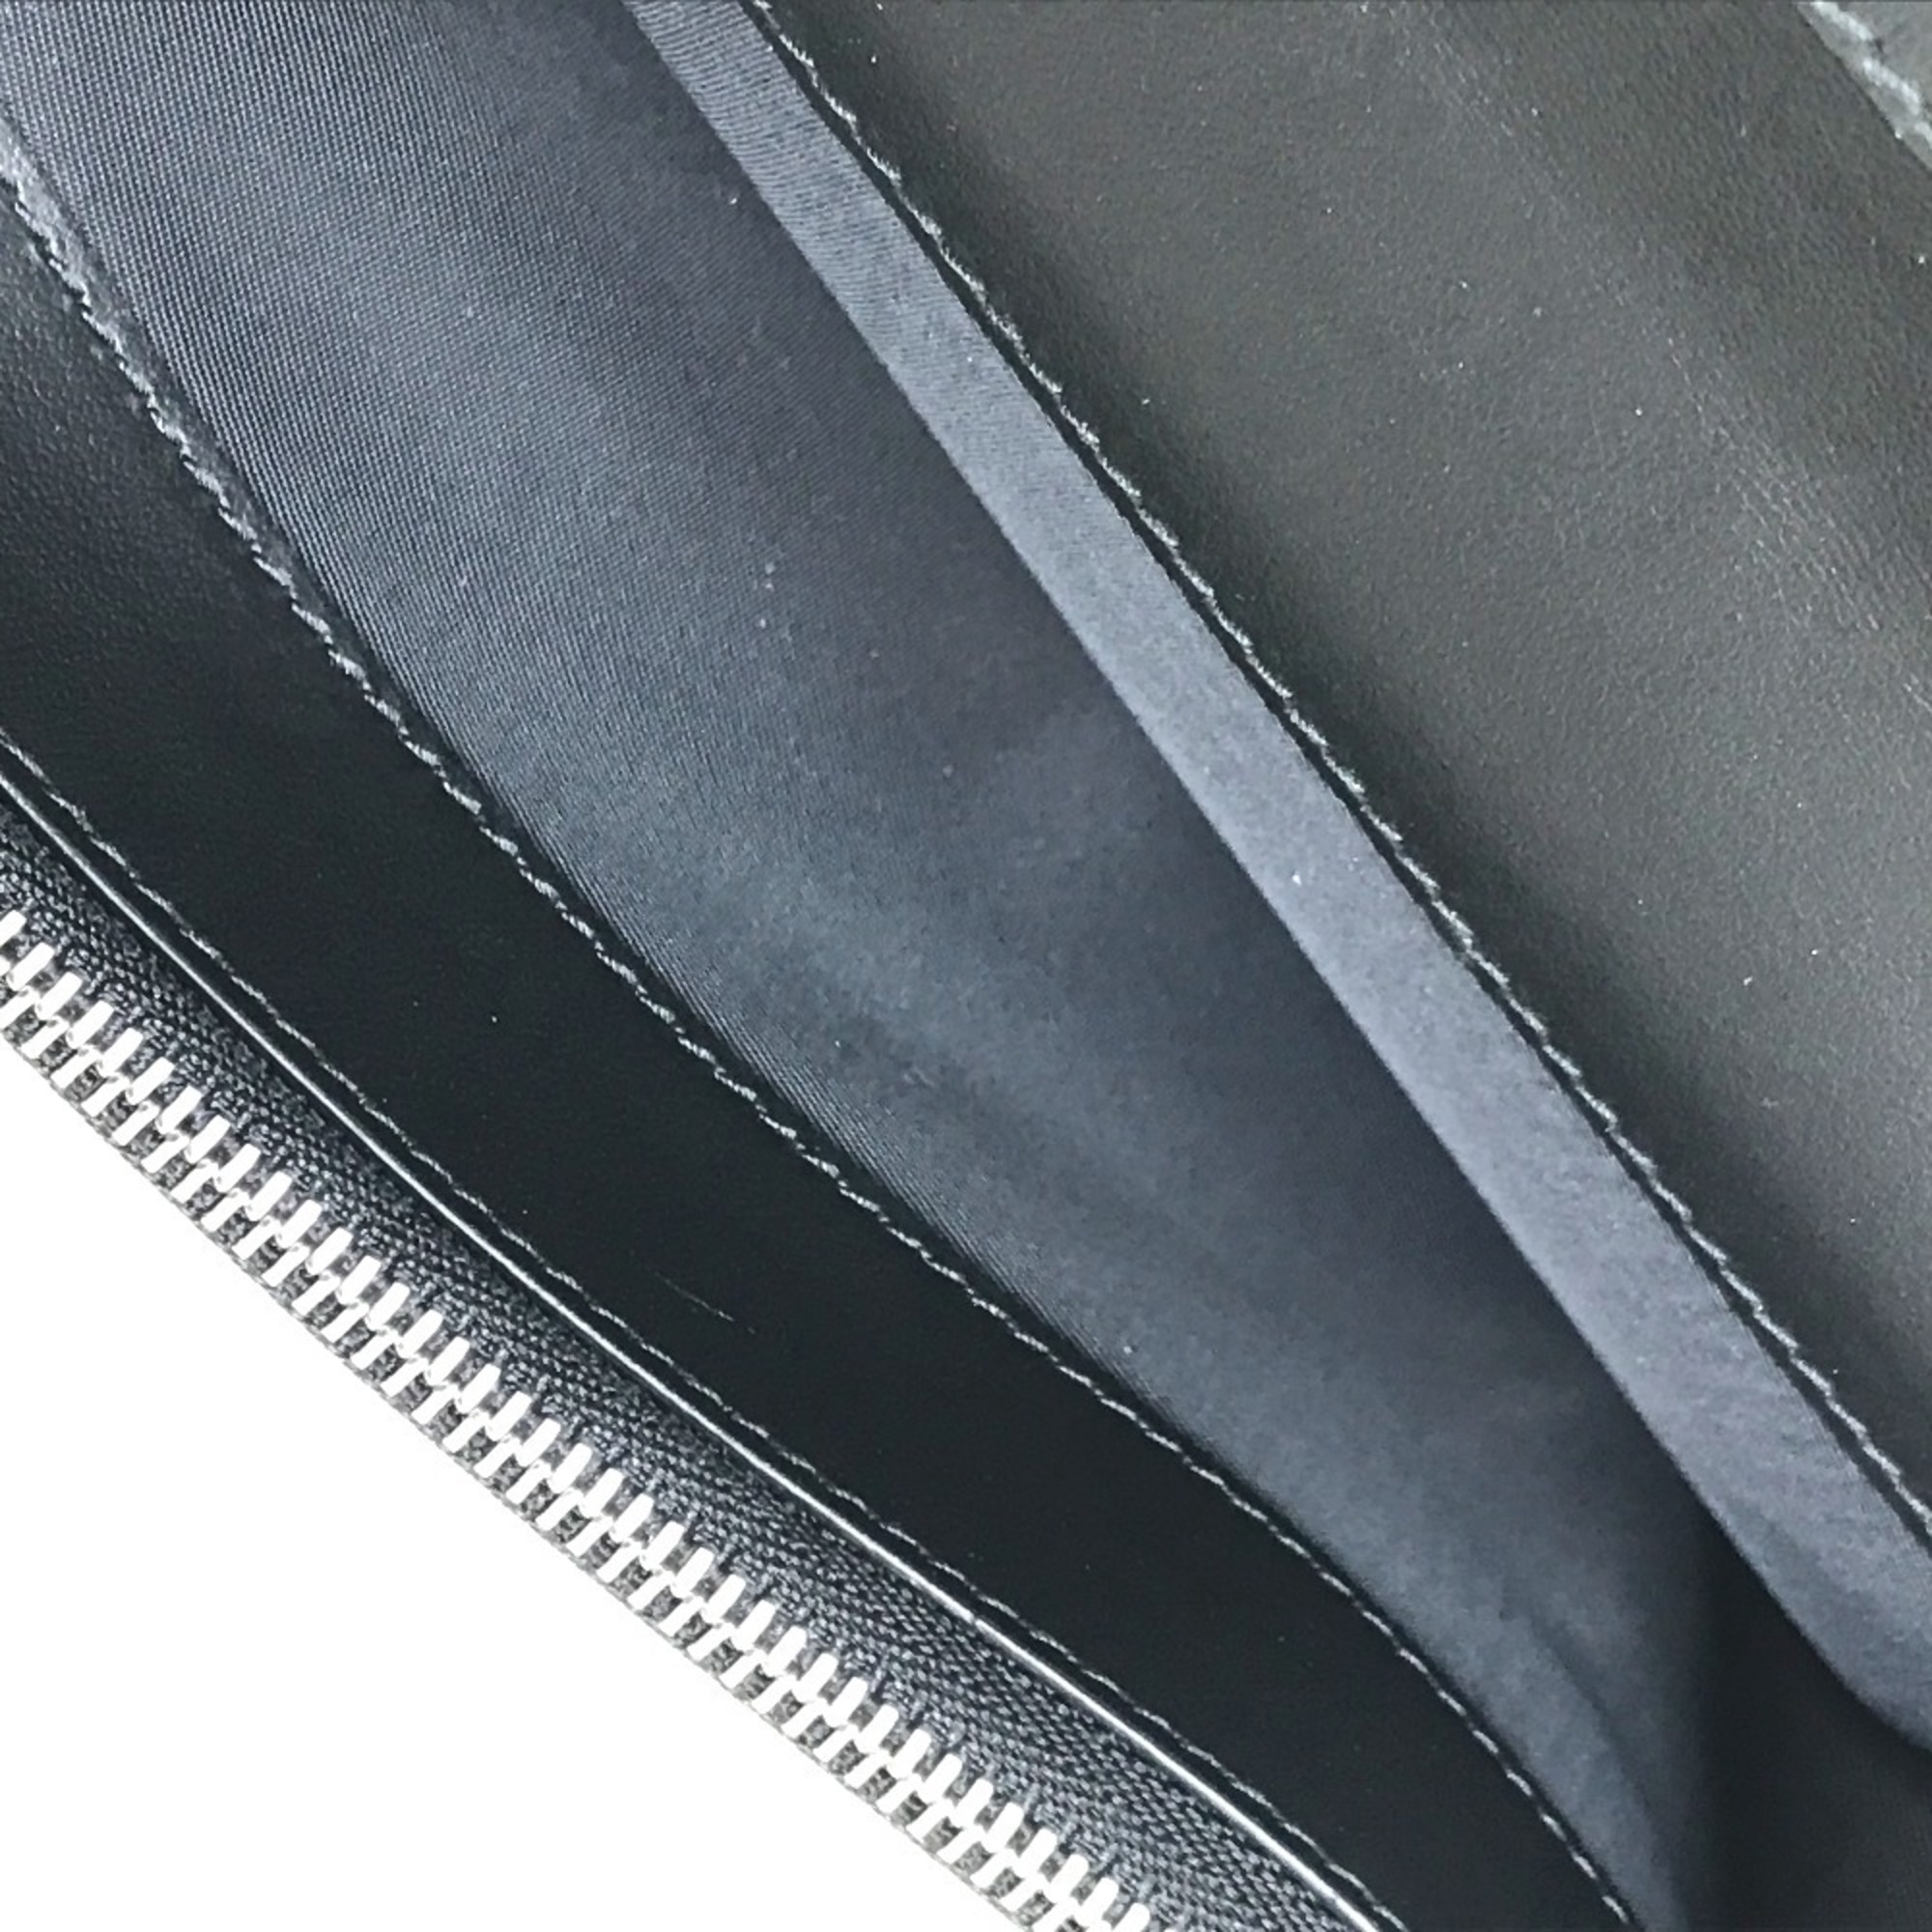 BURBERRY 8016613 Cavendish Vintage Check Long Wallet PVC/Leather Men's Beige/Black